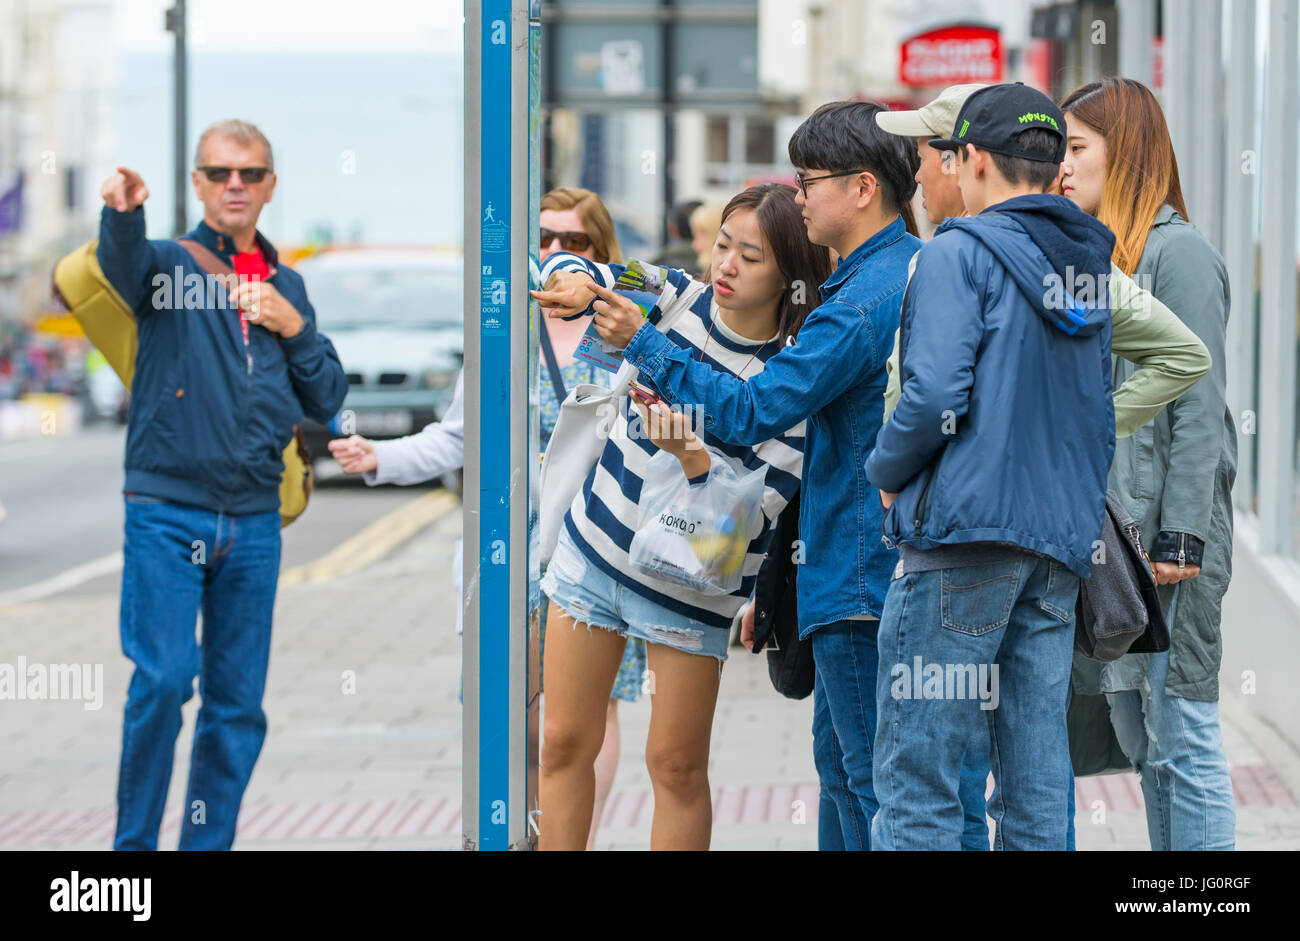 Les touristes japonais à la carte dans une rue dans une ville pour trouver les directions. Banque D'Images